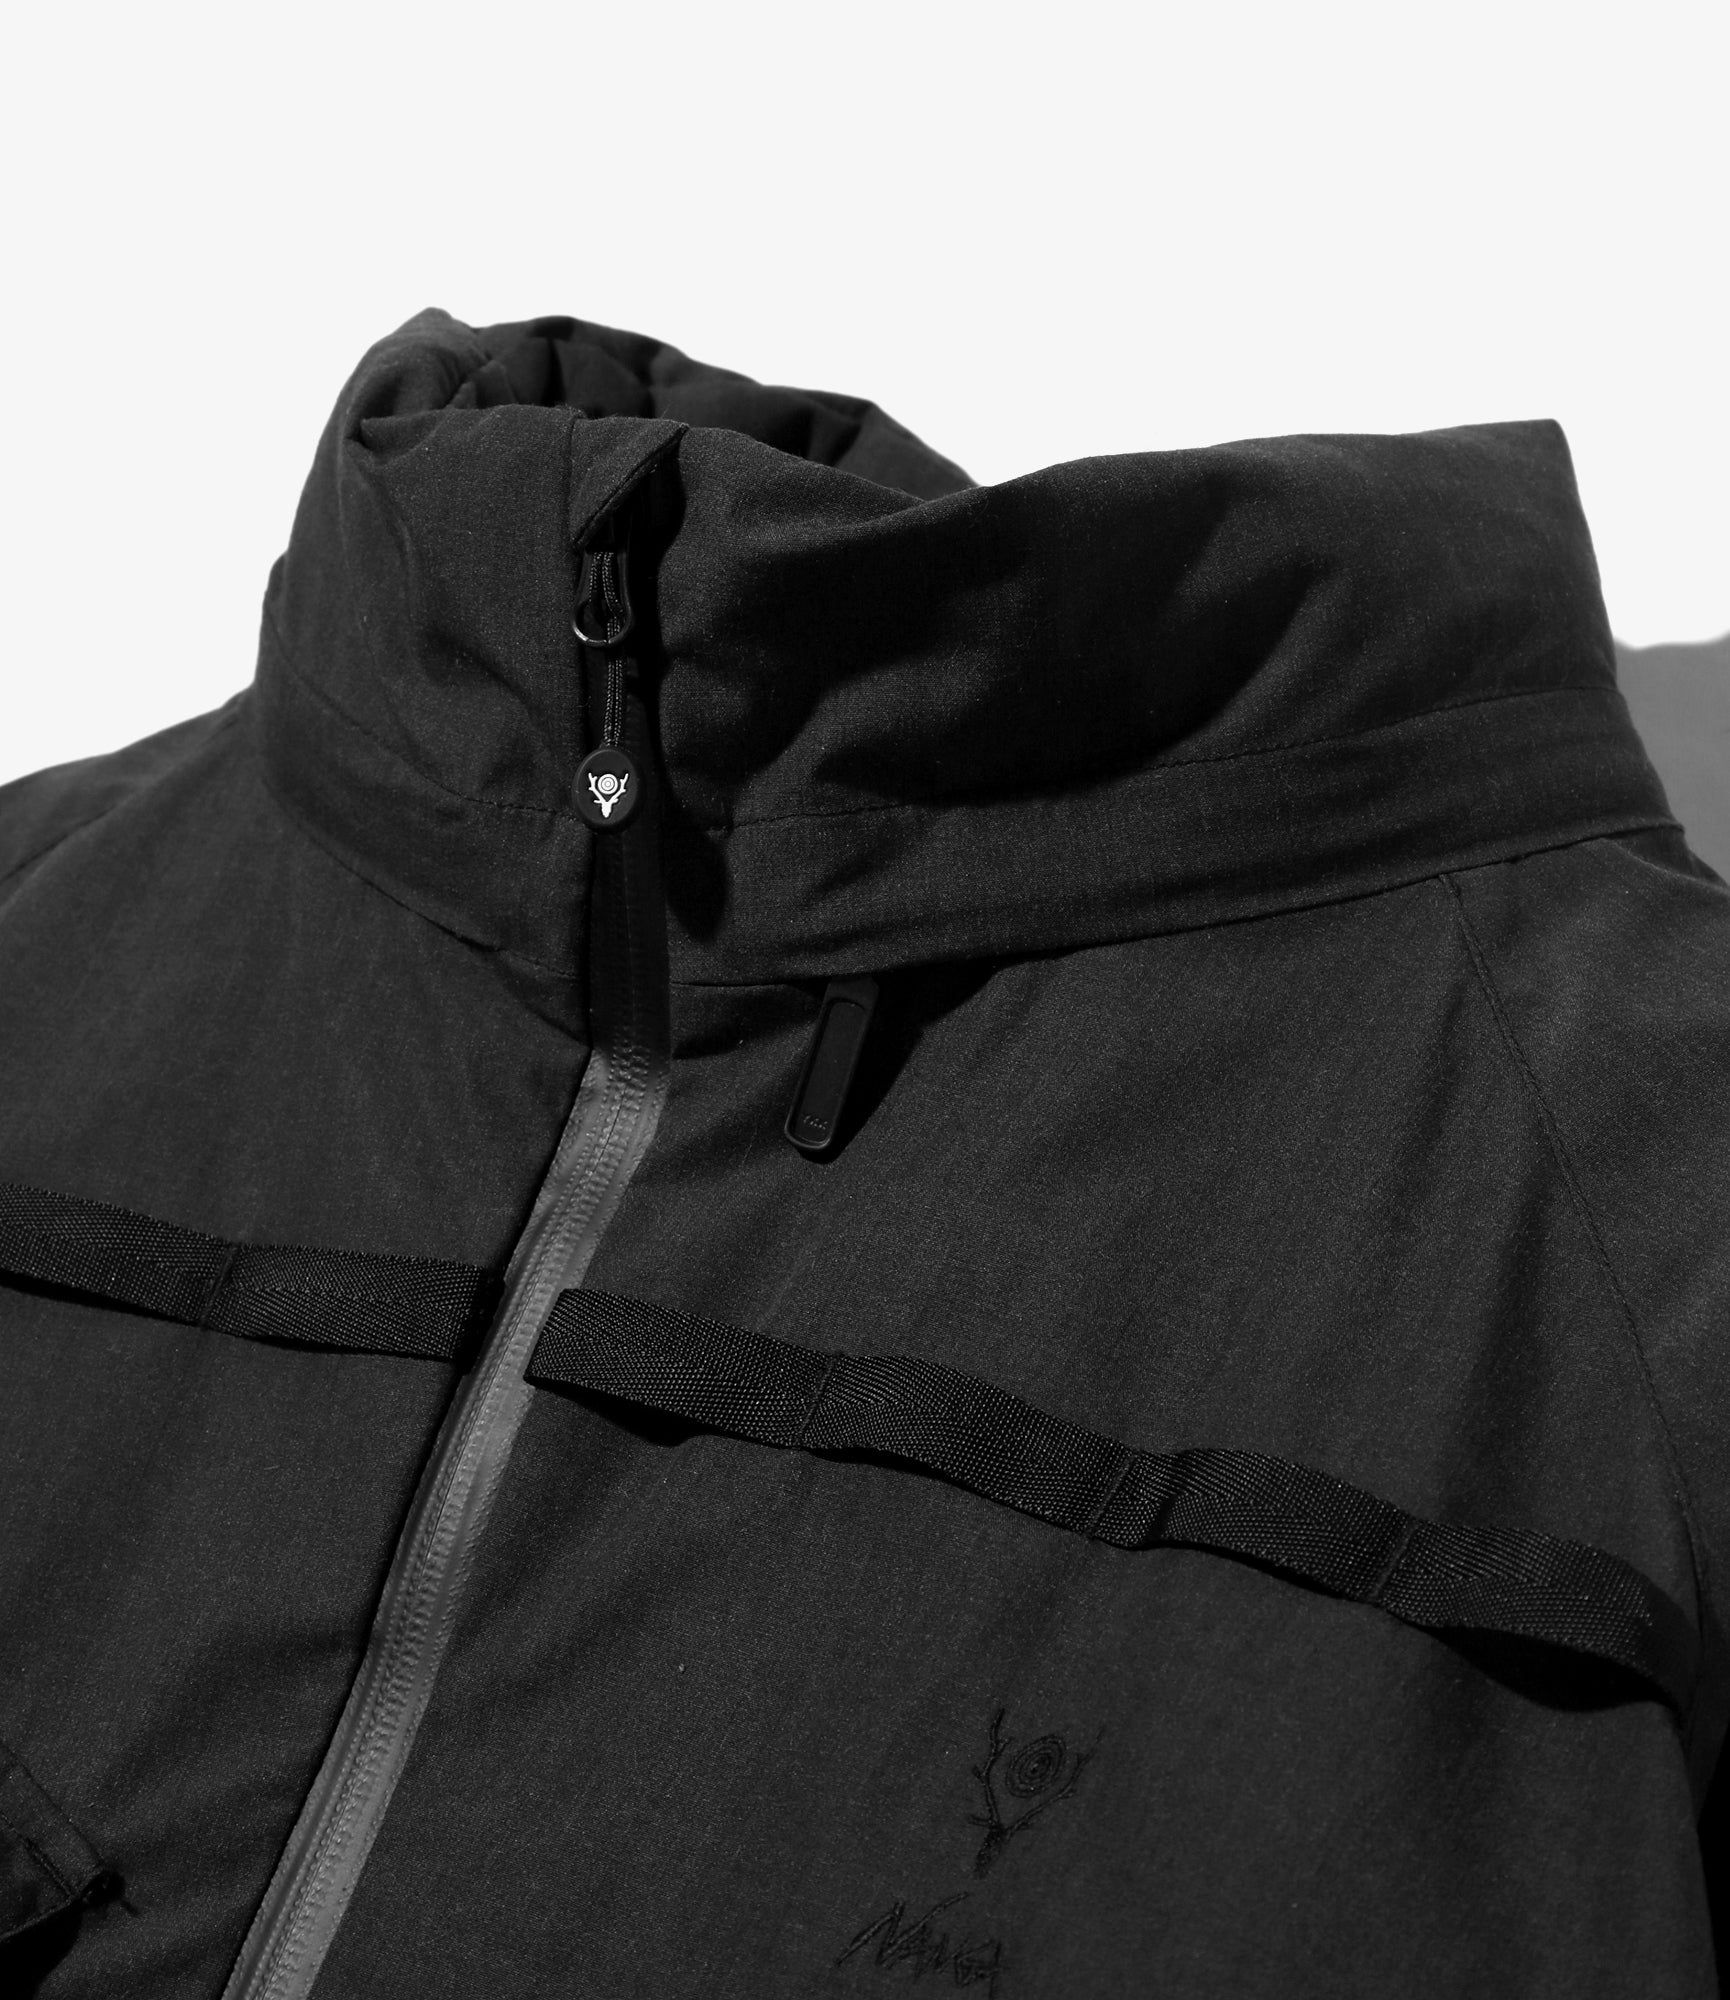 South2 West8 x Nanga Tenkara Trout Down Jacket - Flame Resistant - Black